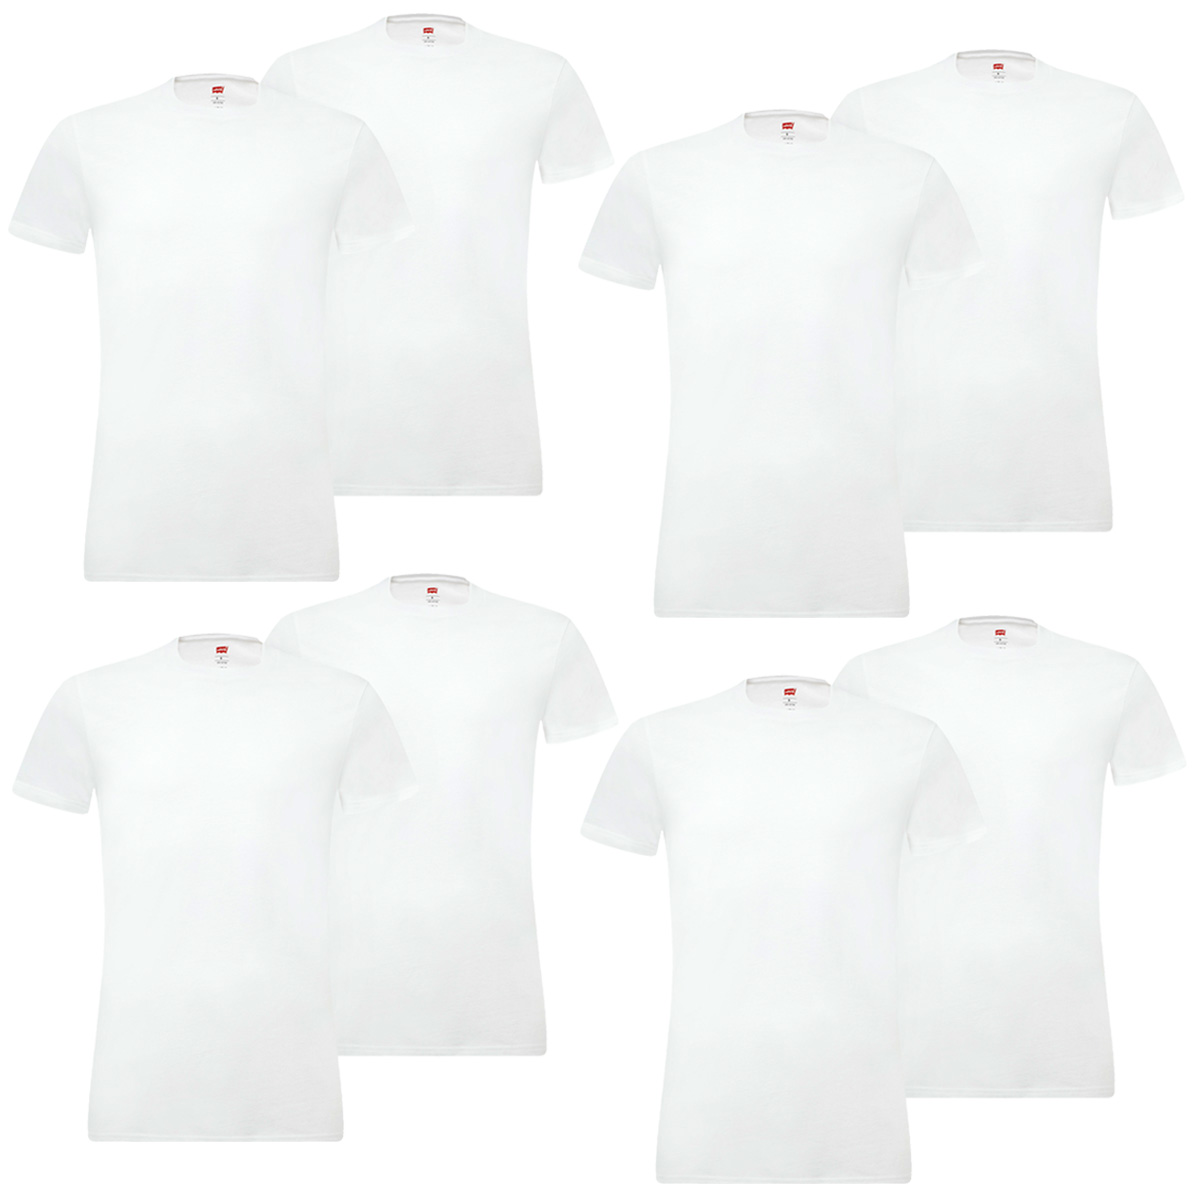 8er Pack Levis Solid Crew T-Shirt Men Herren Unterhemd Rundhals Stretch Cotton